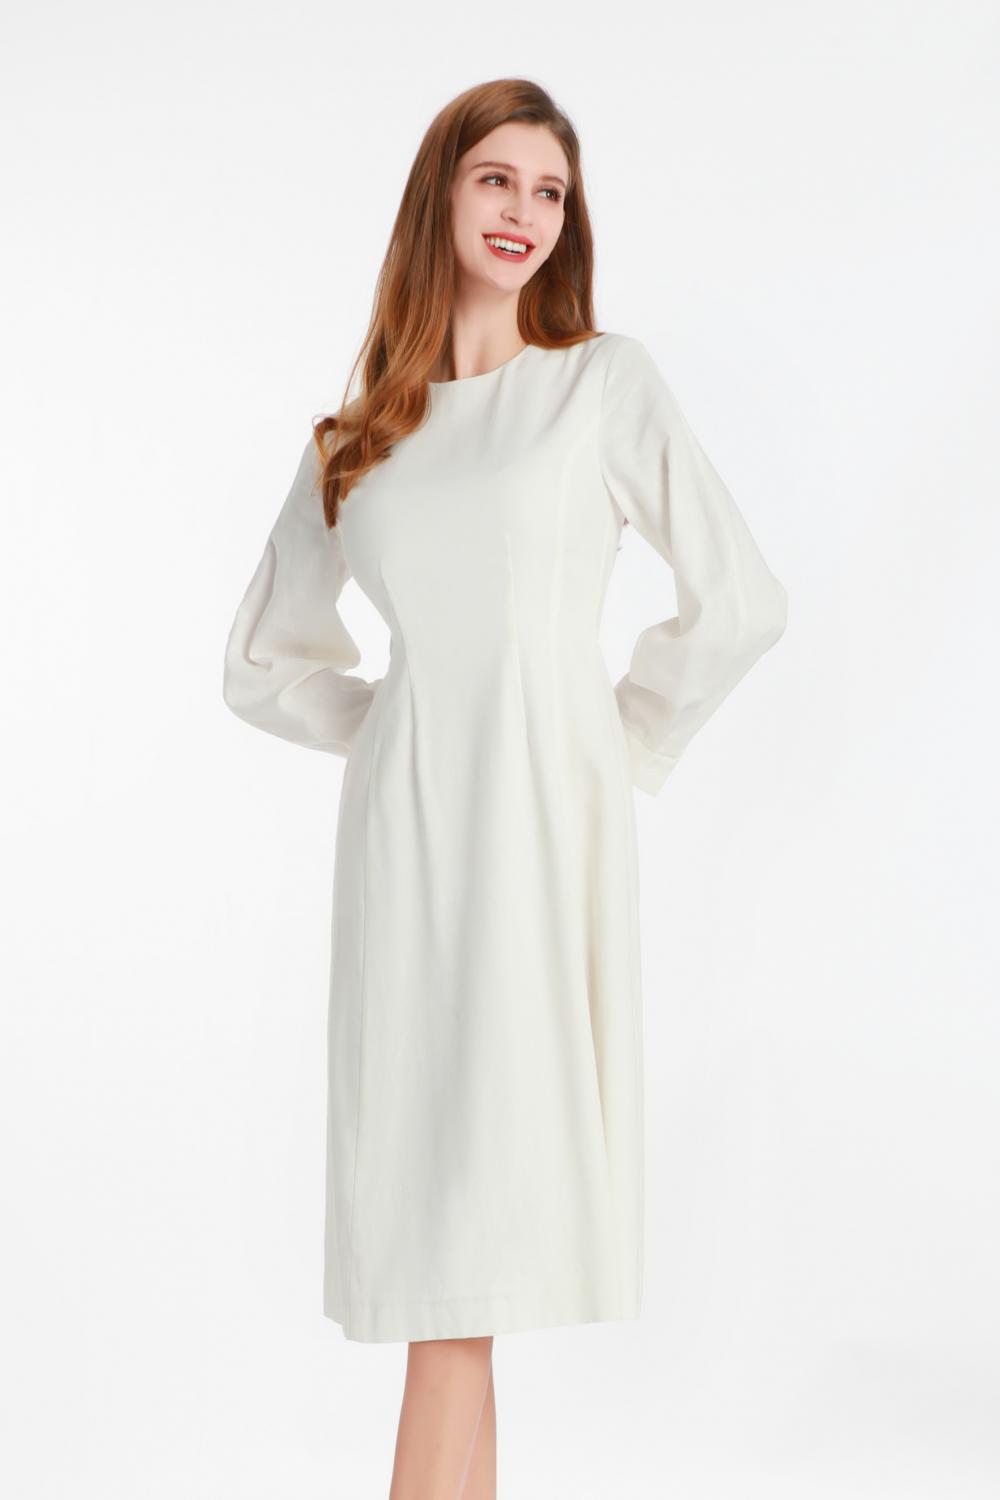 एक छोटे गोल कॉलर के साथ सफेद लंबी आस्तीन वाली पोशाक